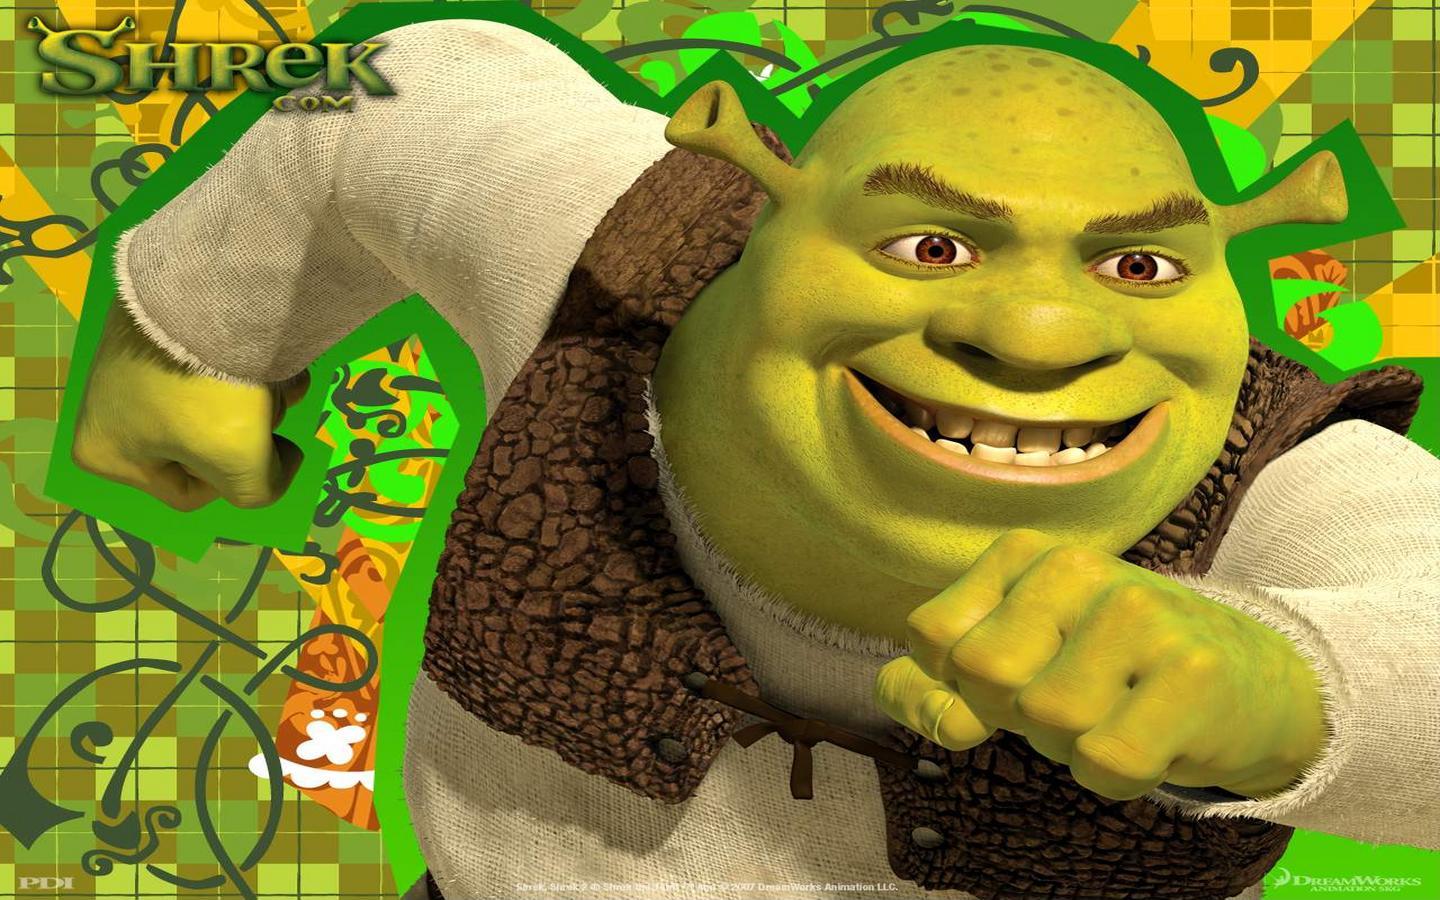 Thumb The Final Shrek Screensaver Uma Das Imagens De Presentes